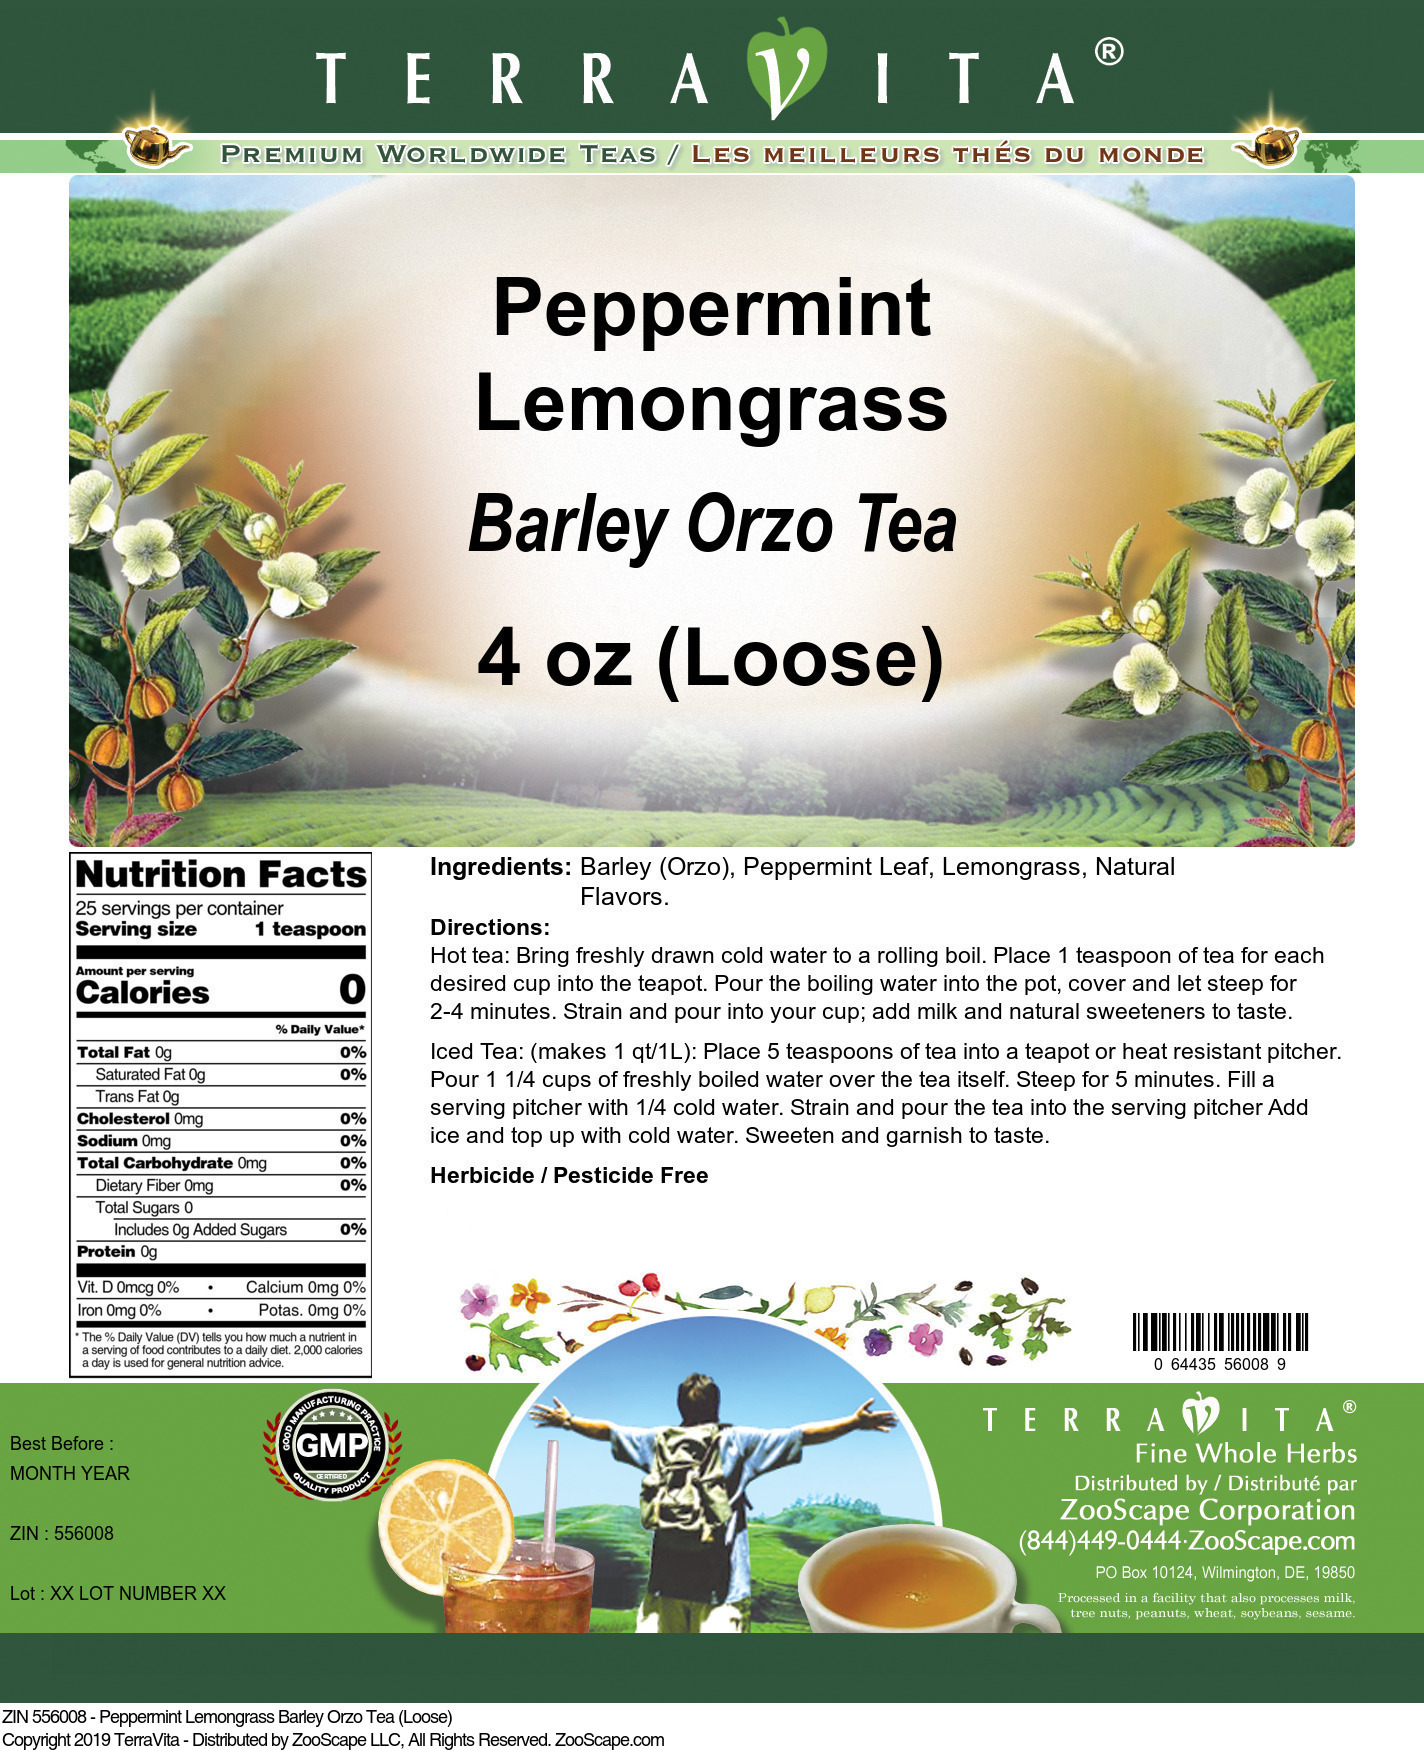 Peppermint Lemongrass Barley Orzo Tea (Loose) - Label